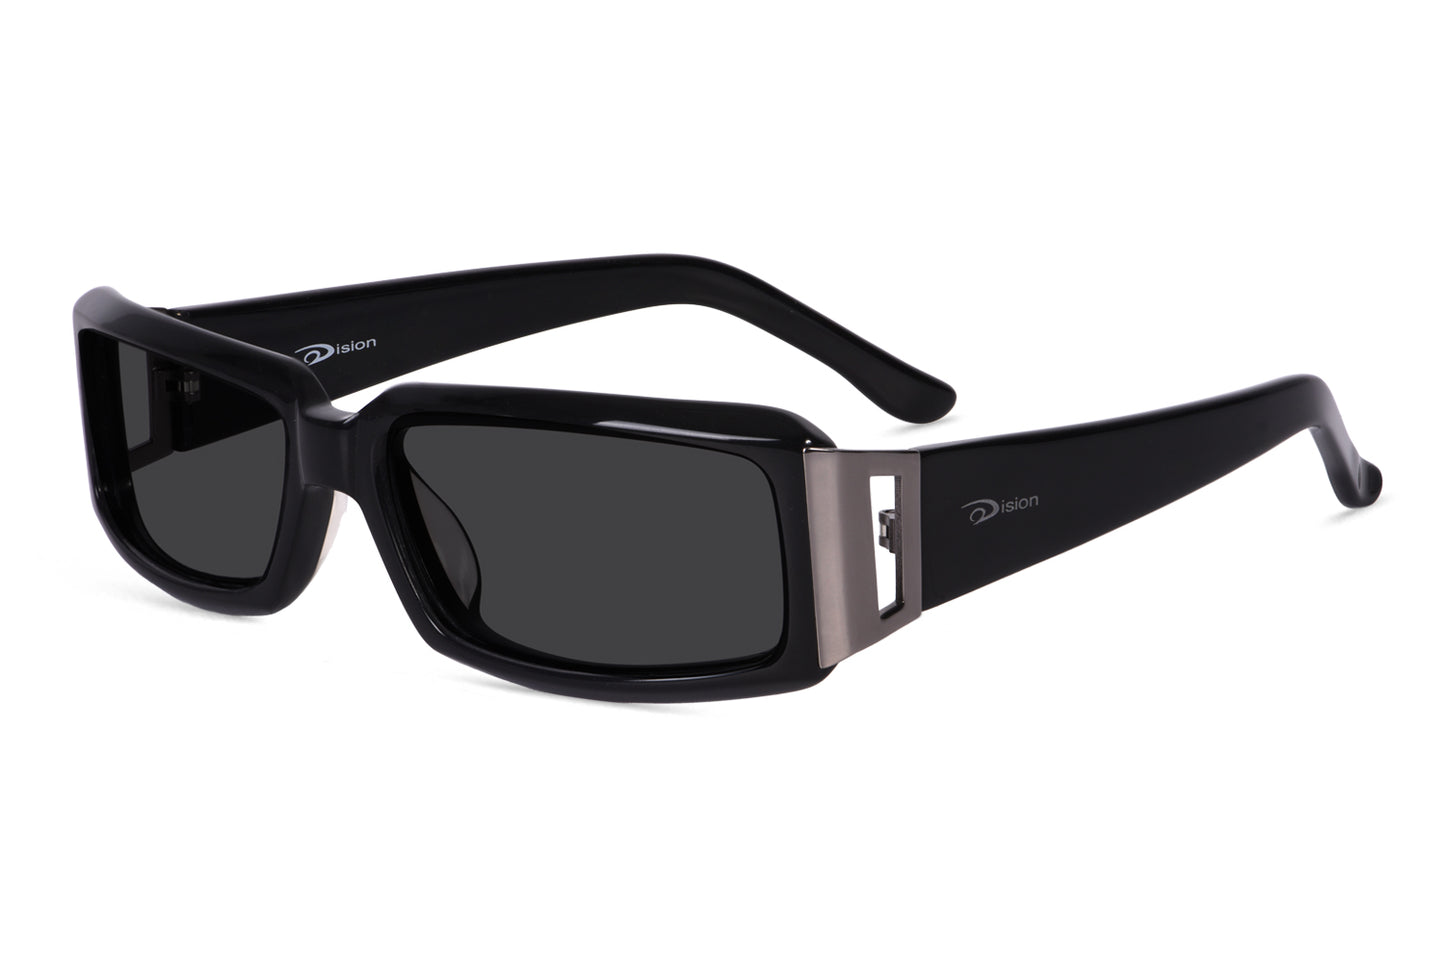 rectangular-sunglasses-frame